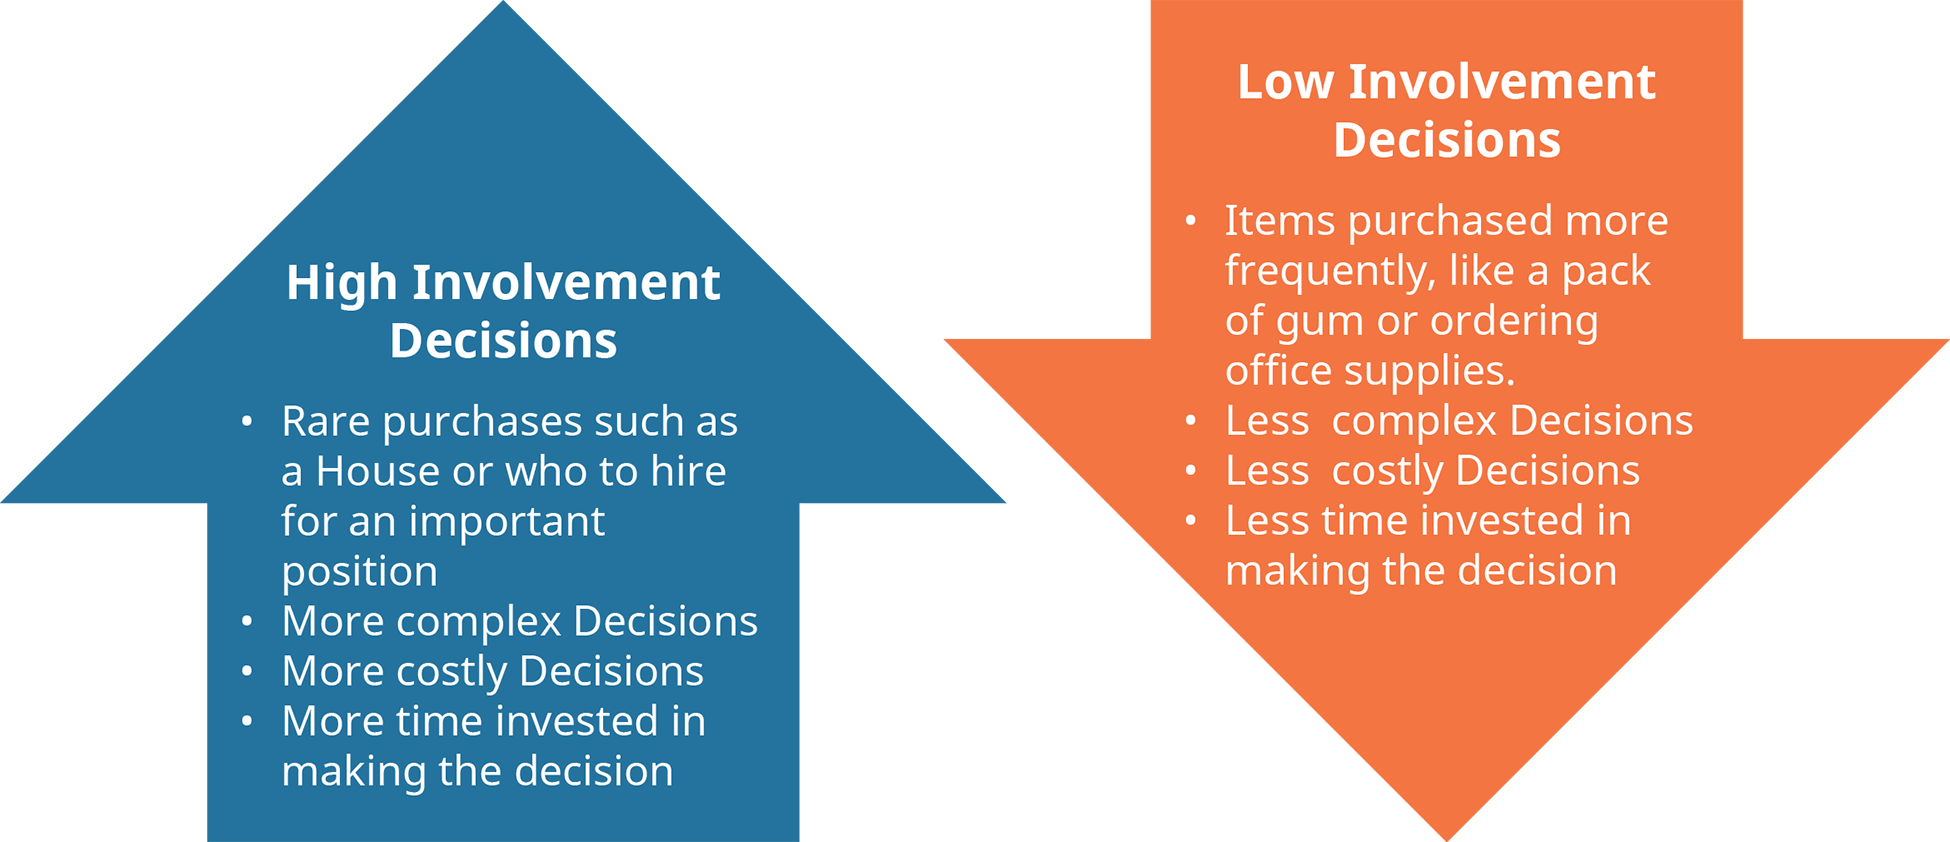 يوضح الرسم التخطيطي الخصائص المختلفة لقرارات المشاركة العالية والمشاركة المنخفضة.